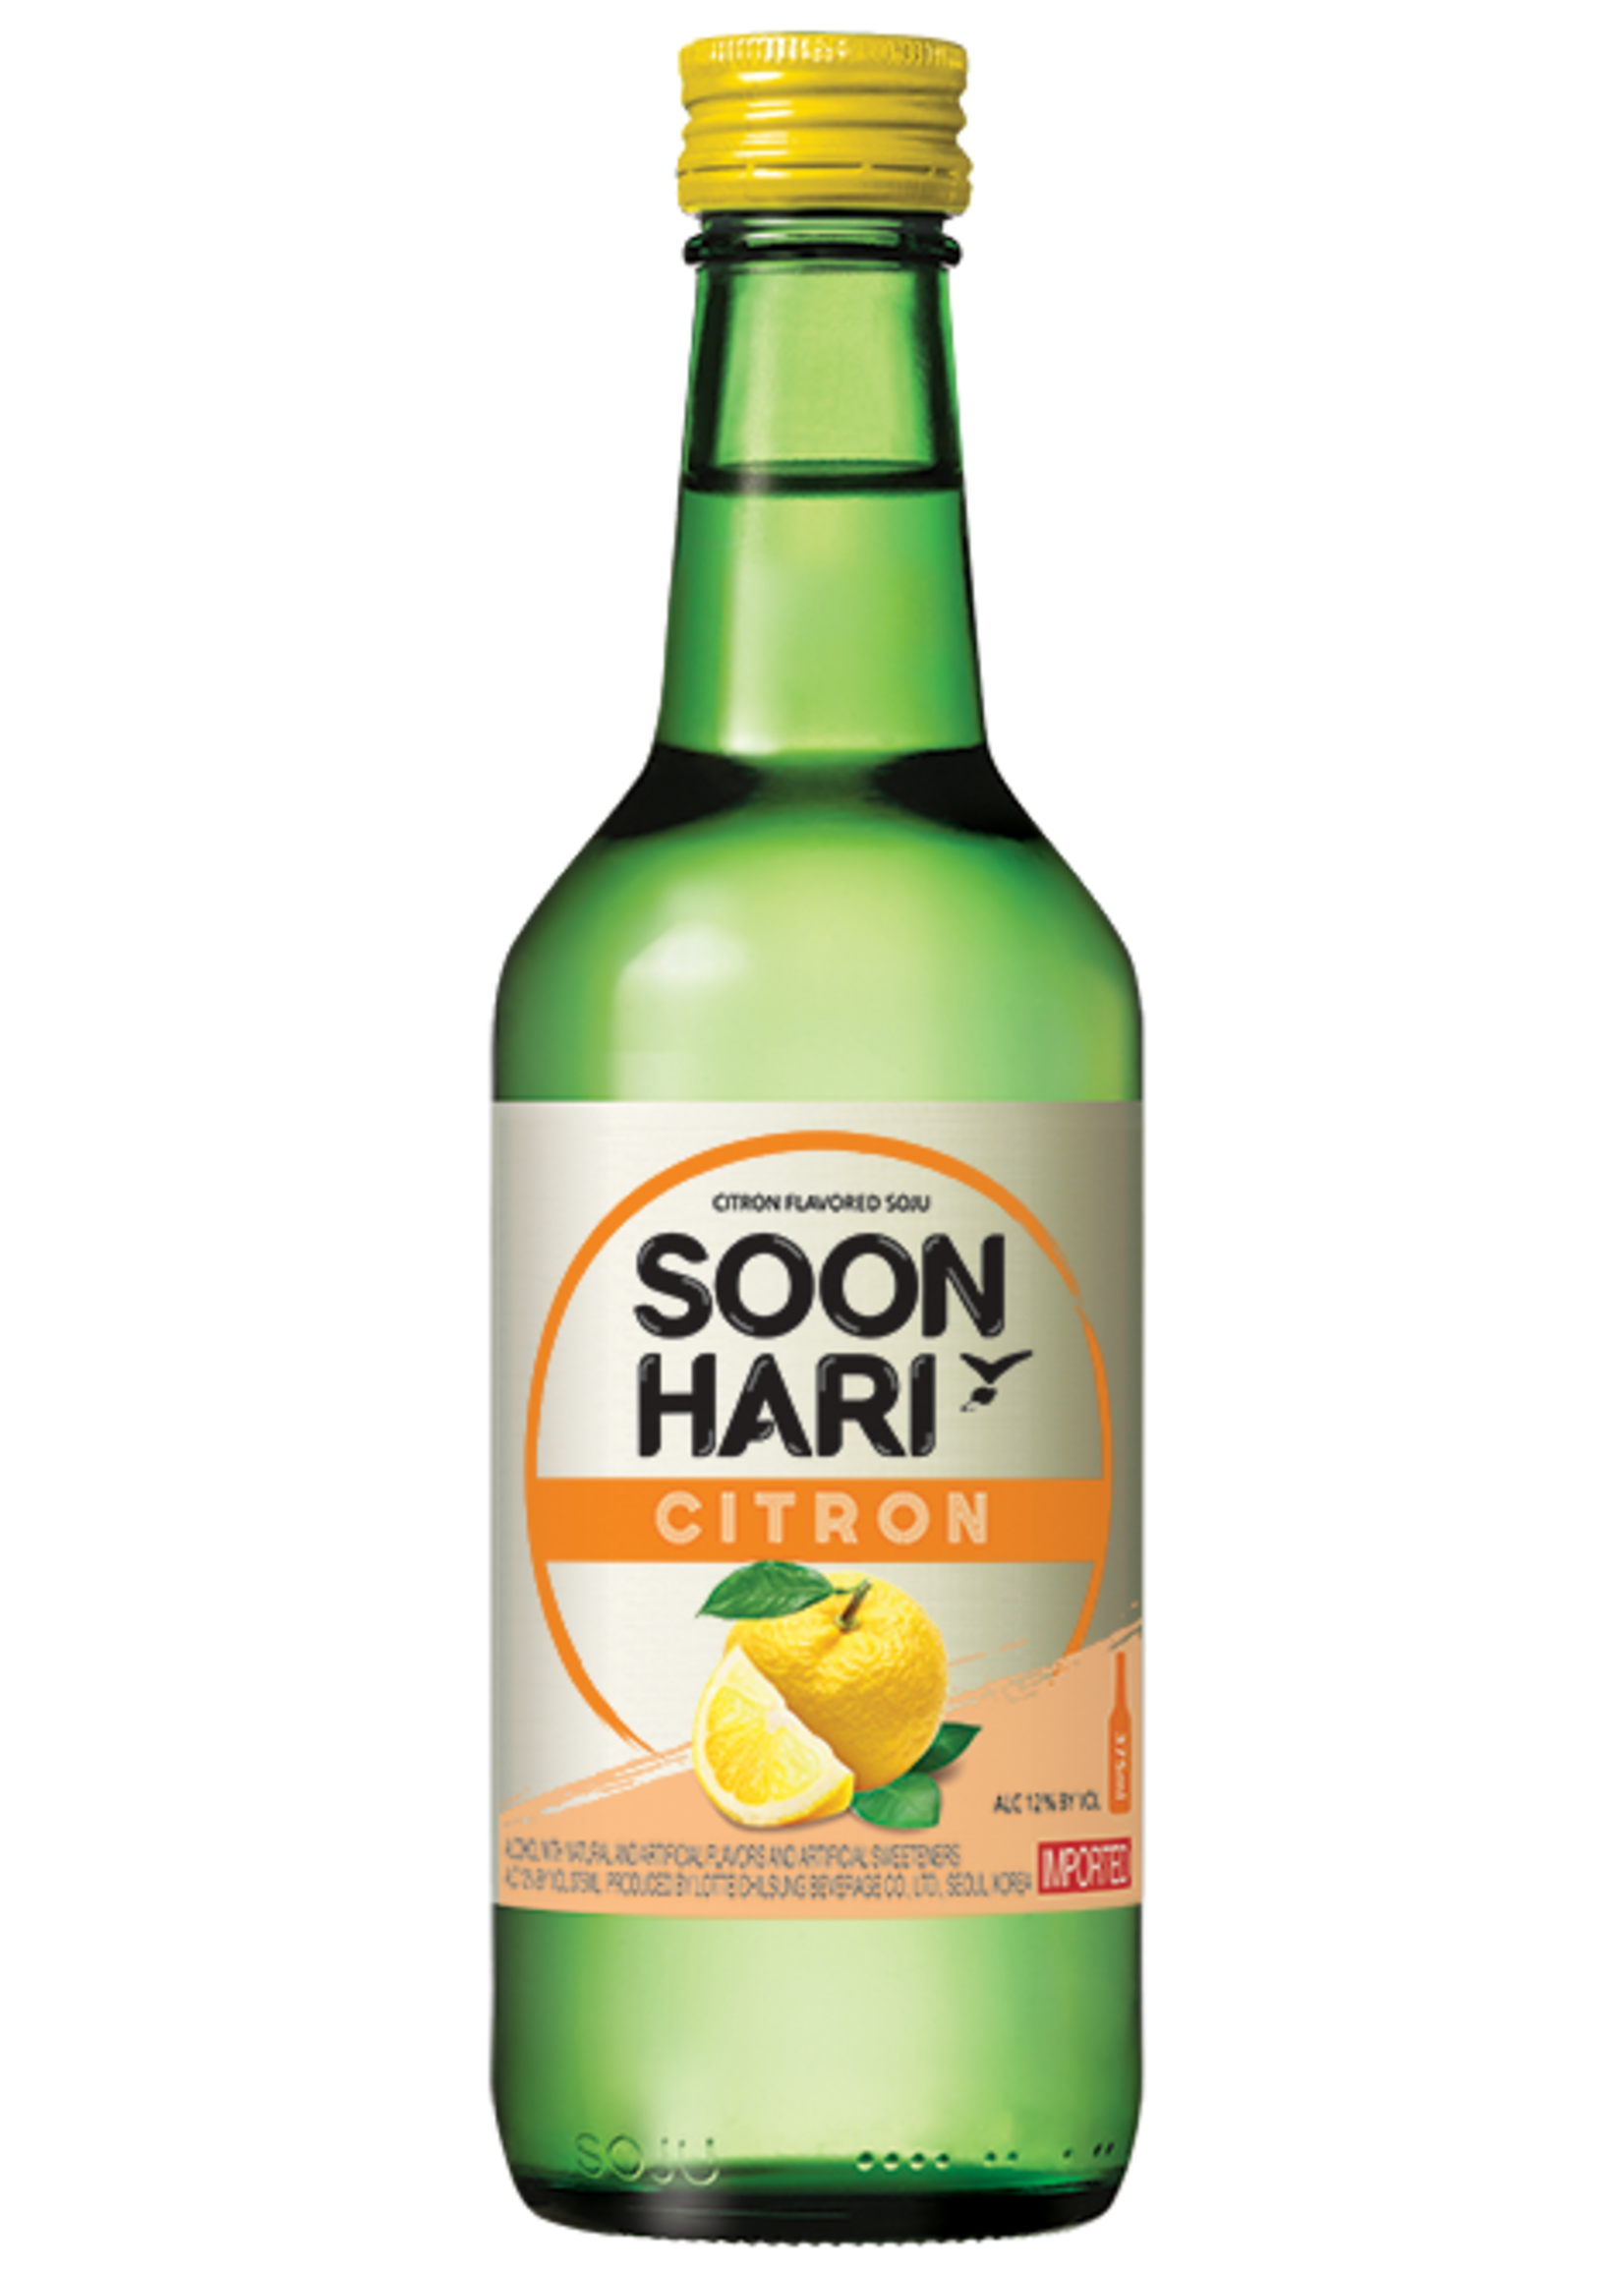 Soon Hari Soon Hari / Citron Soju / 375mL